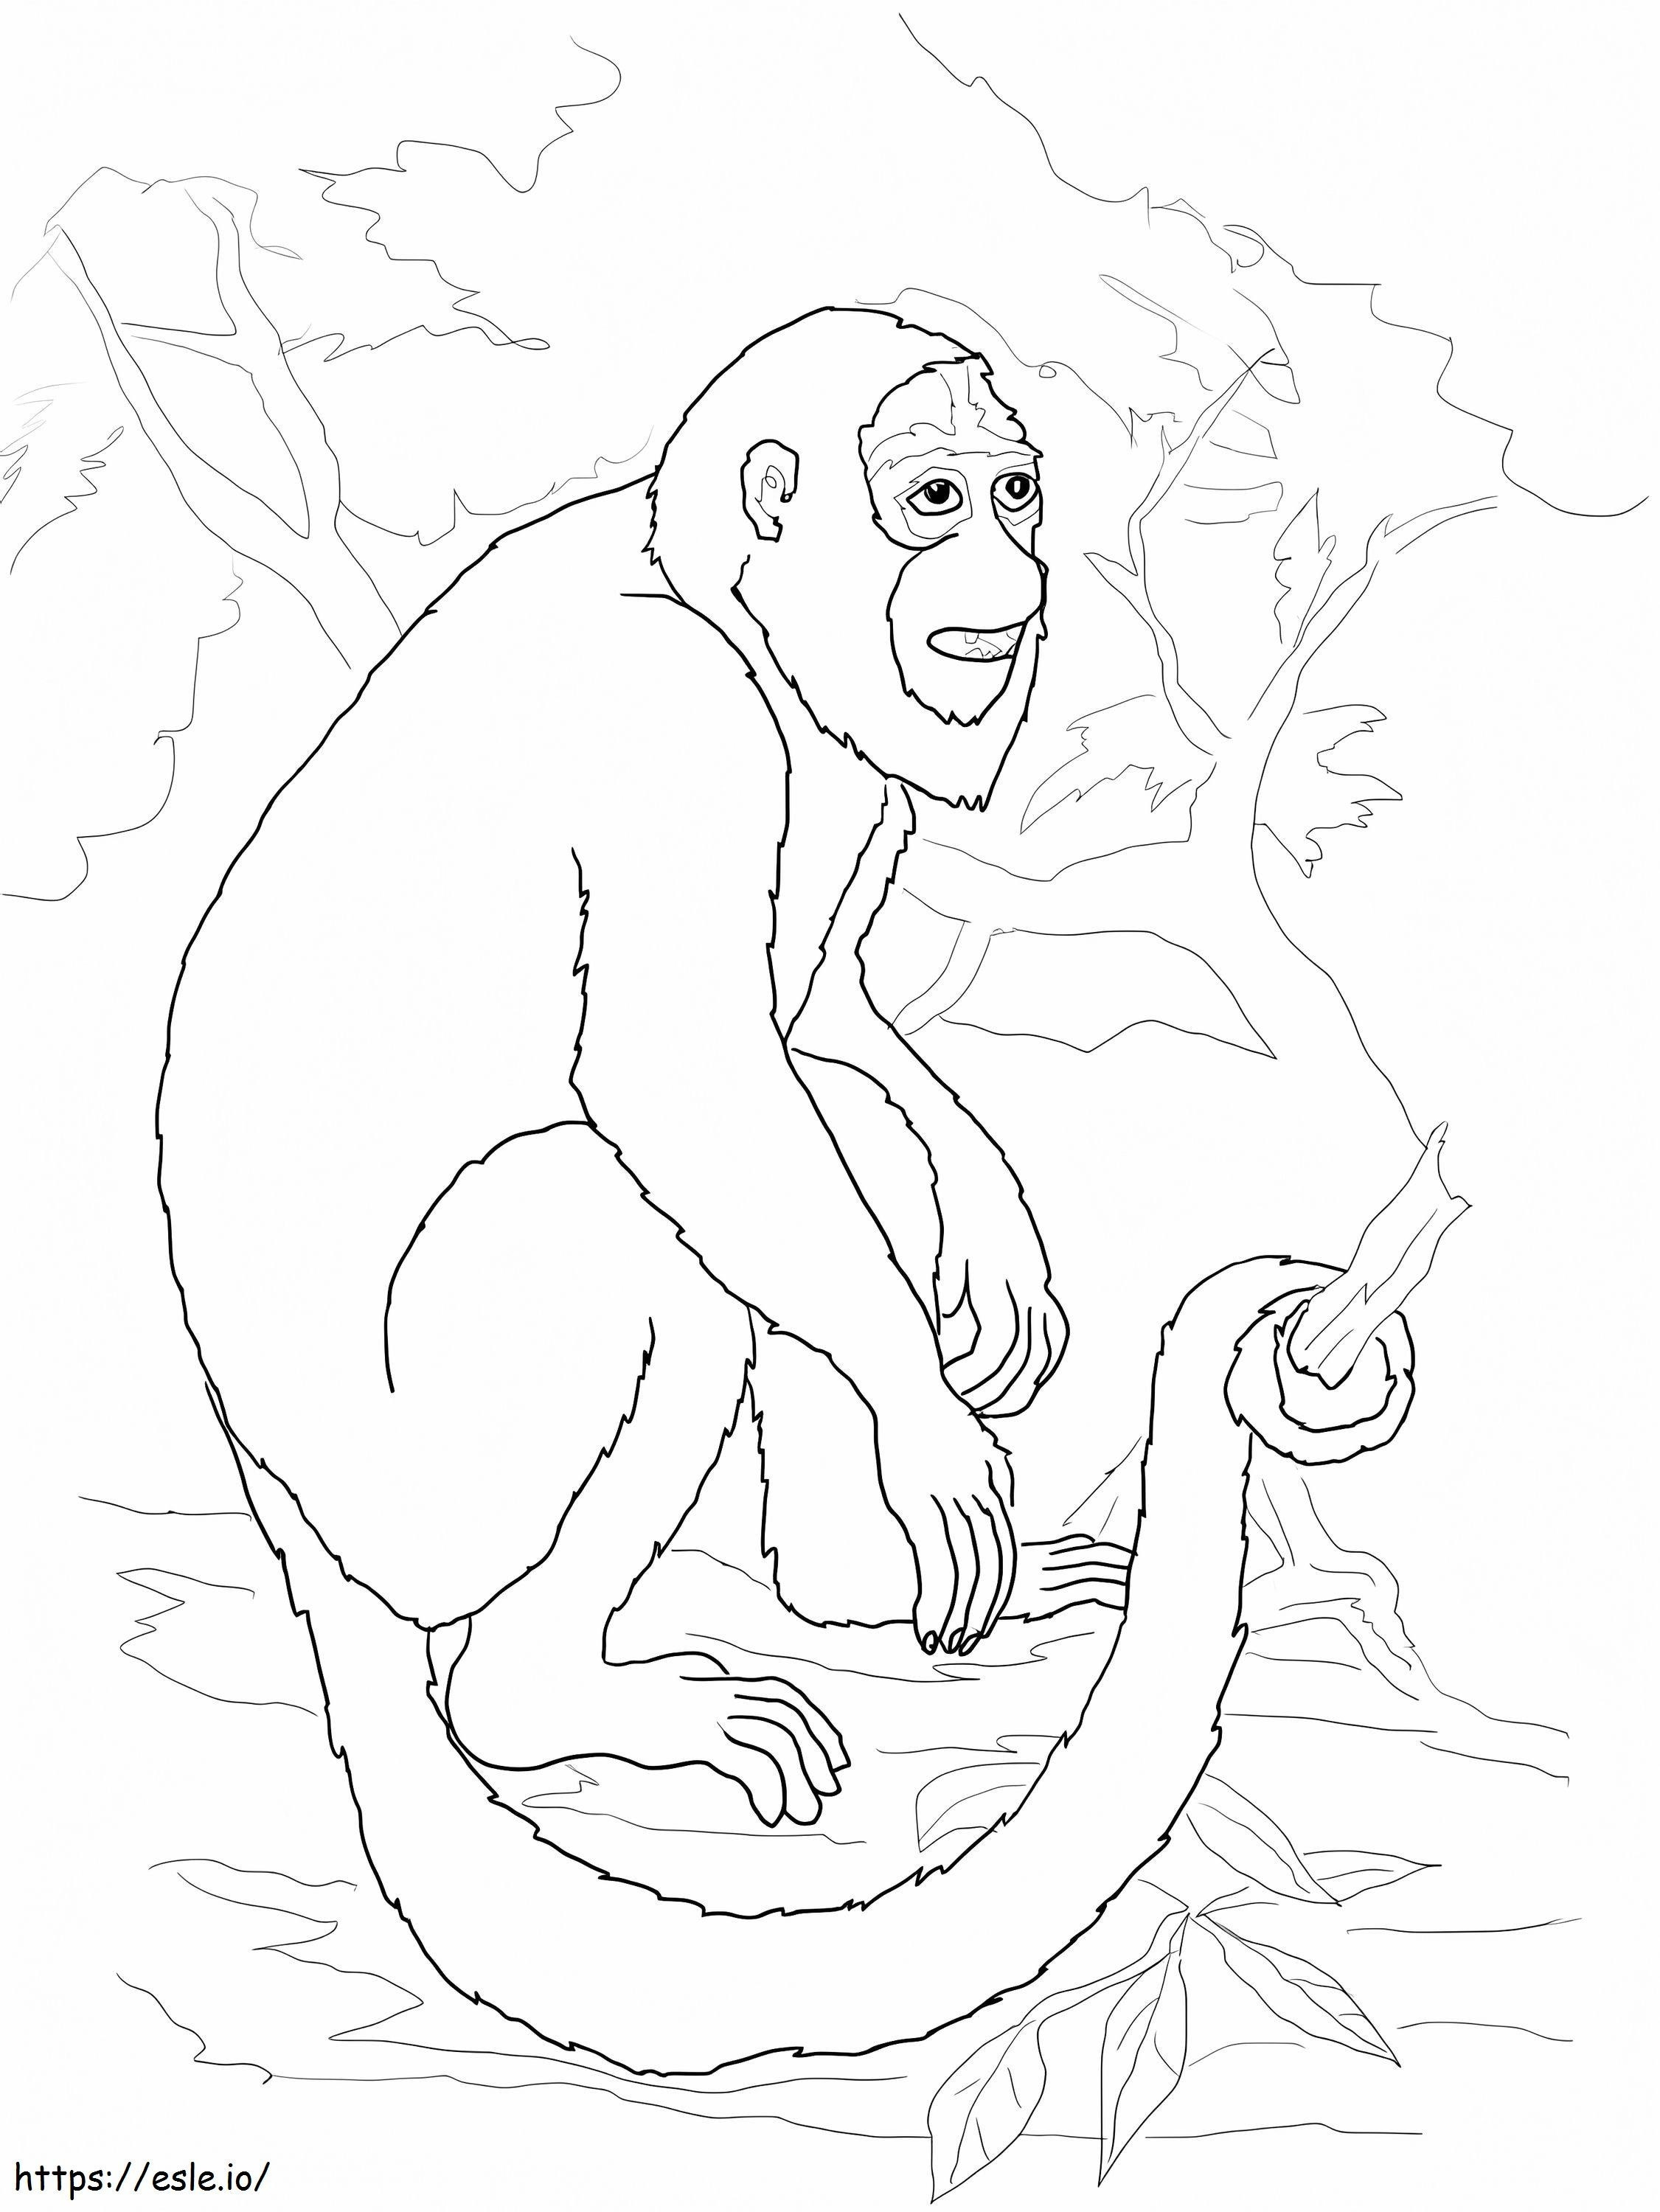 Macaco barulhento para colorir